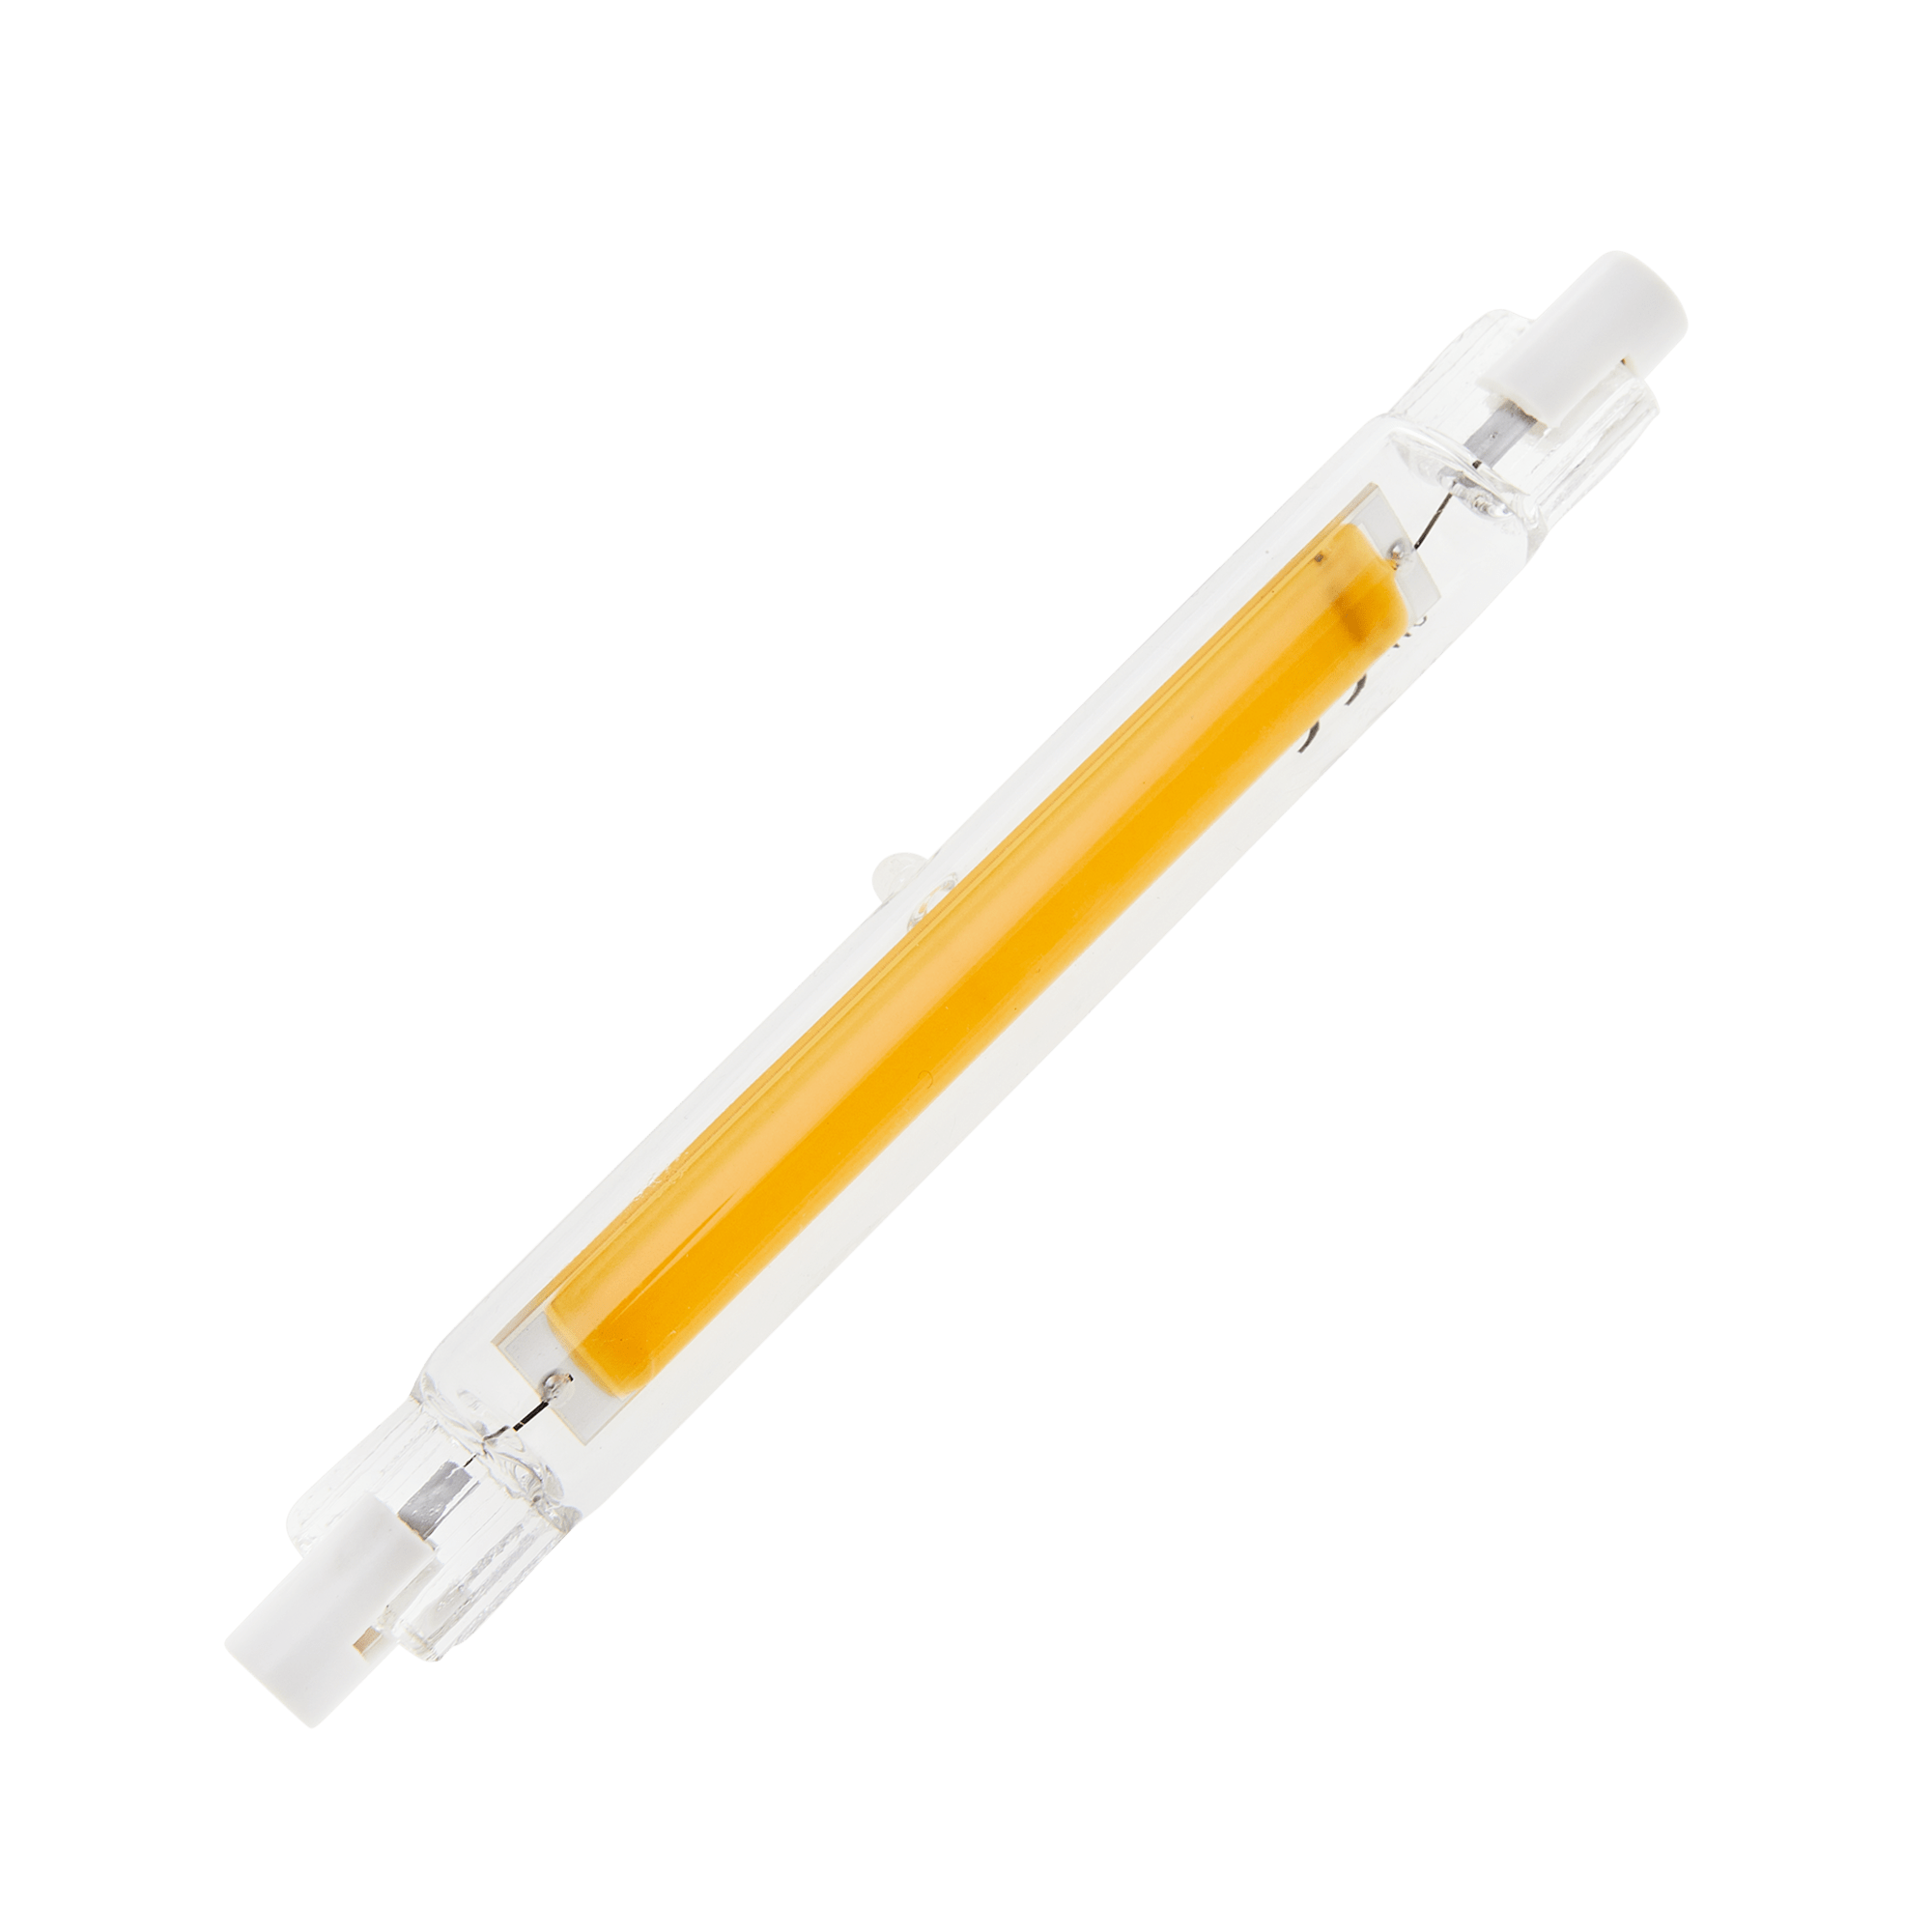 Megaman lampe halogène LED de remplacement R7s 118mm 9W-R7s - blanc chaud